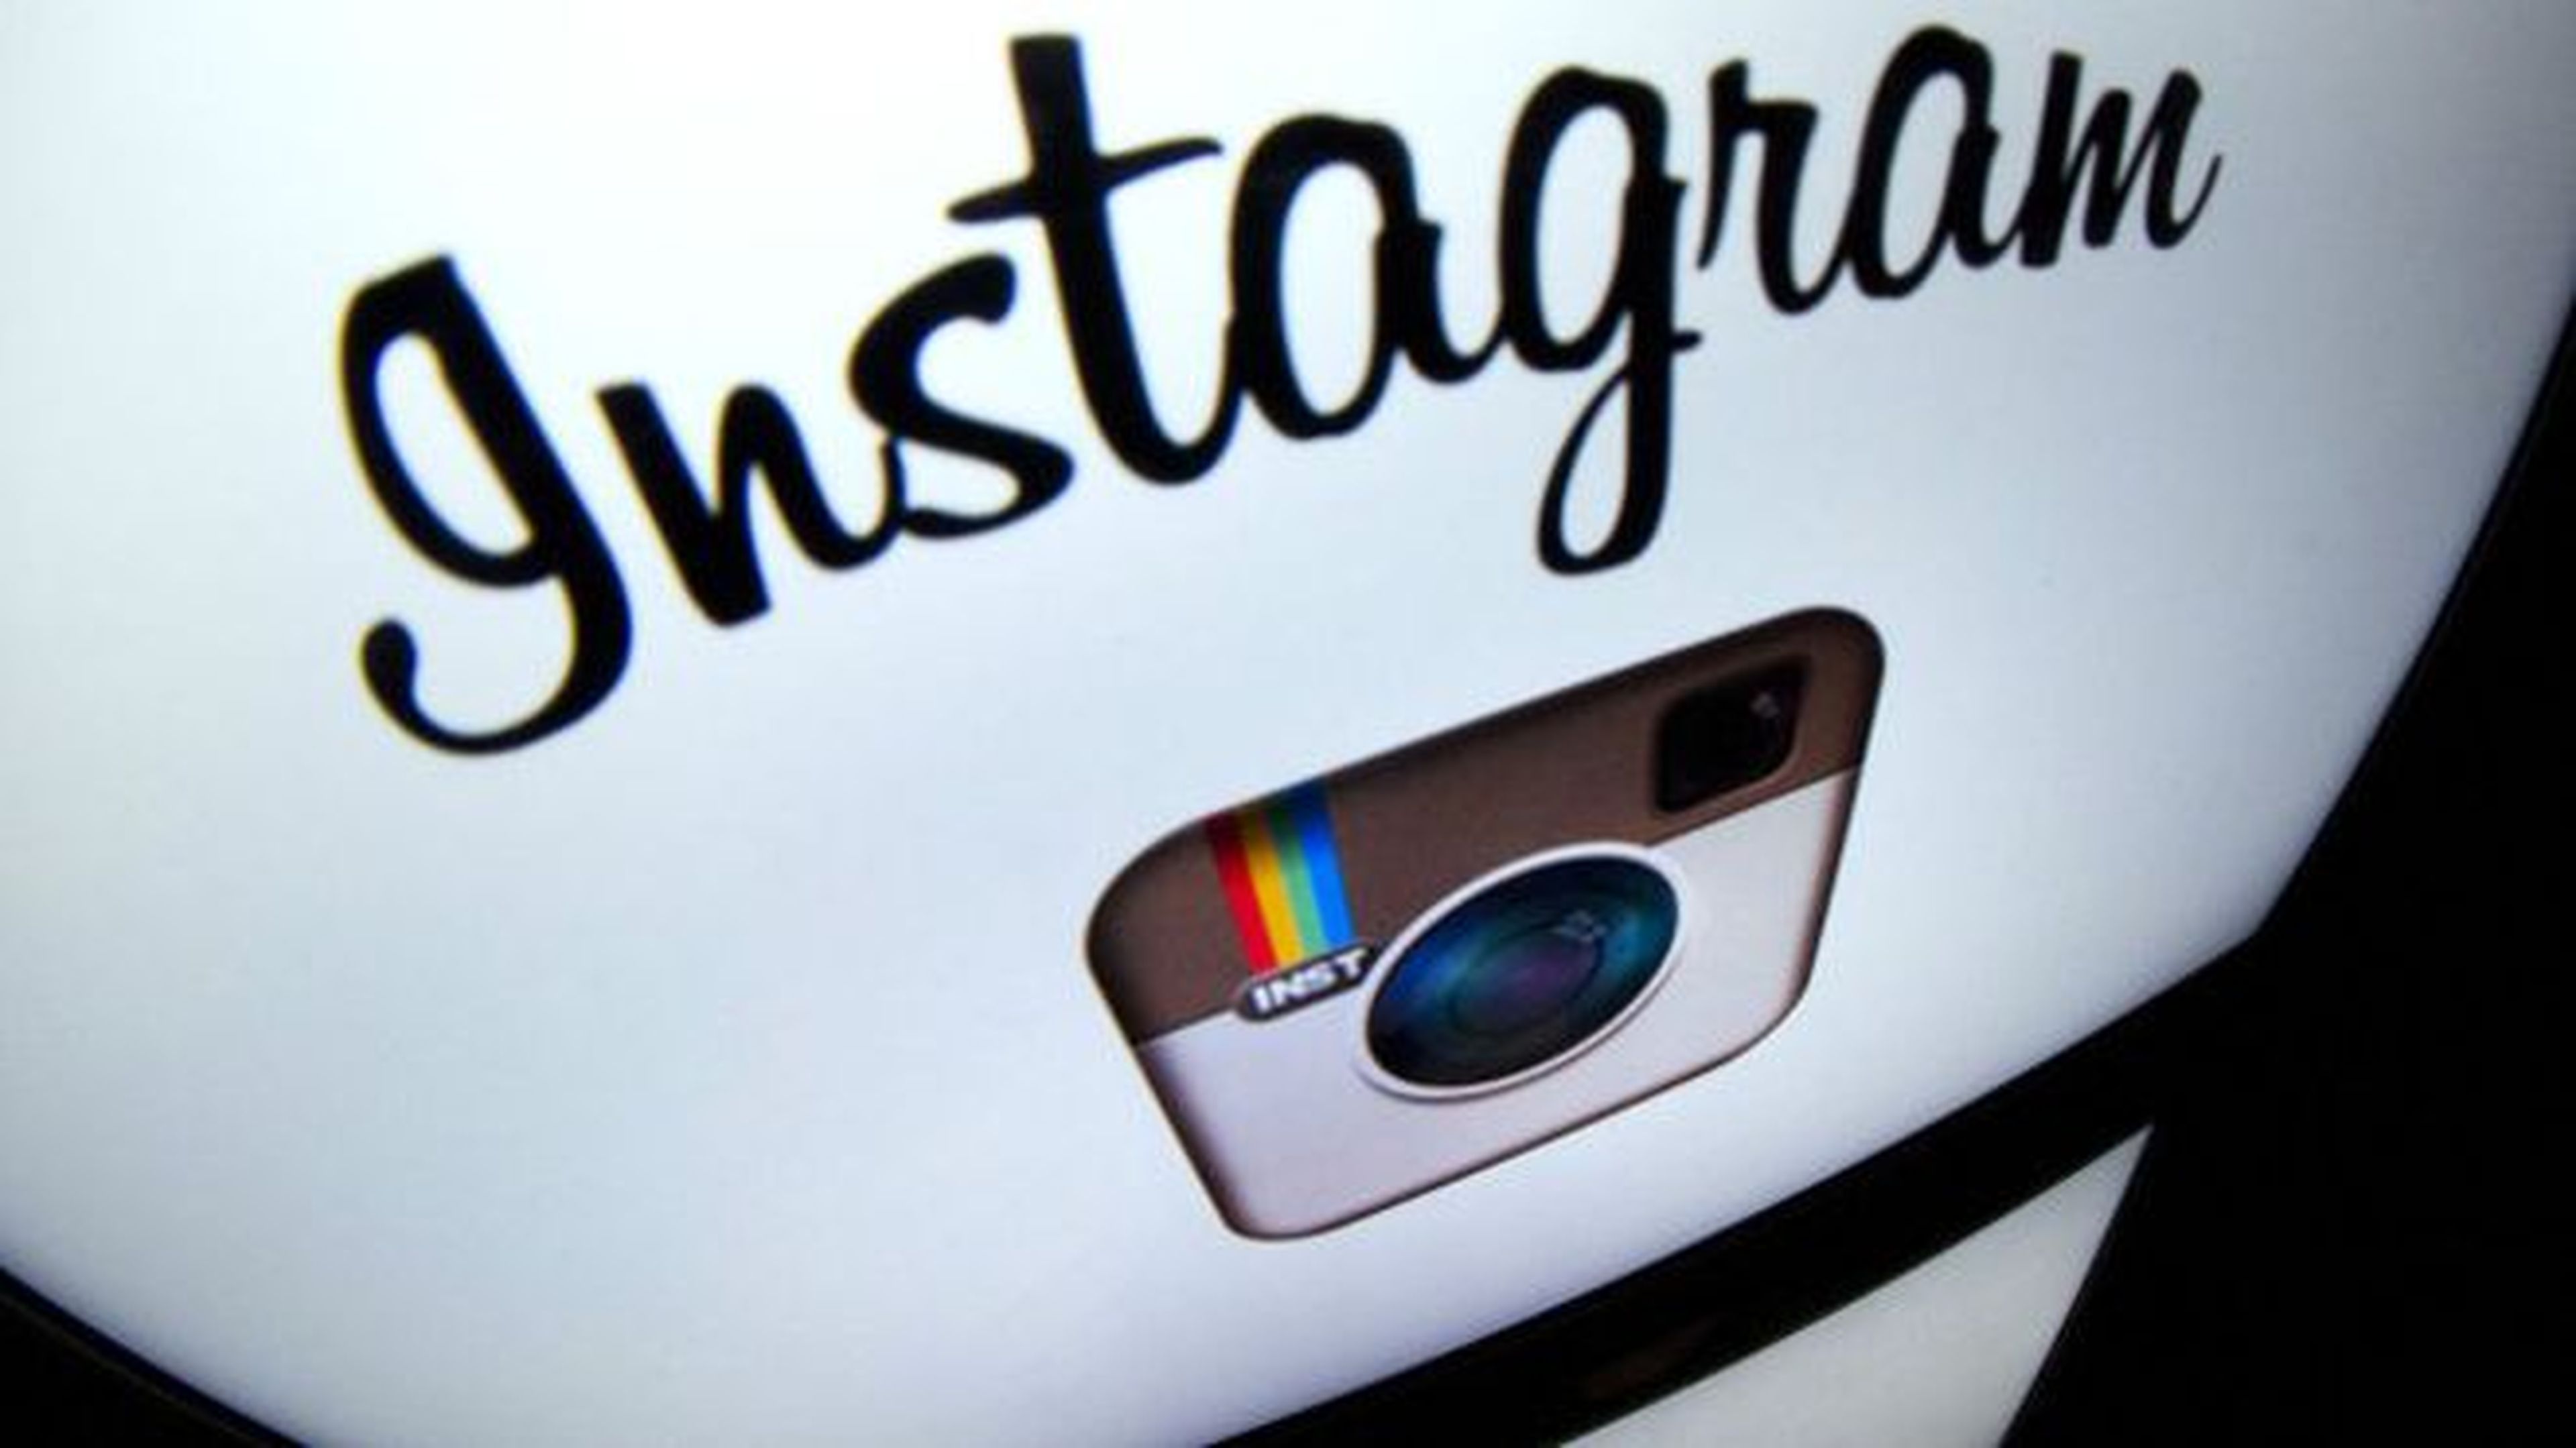 Subir fotos desde la versión web de Instagram ya es posible